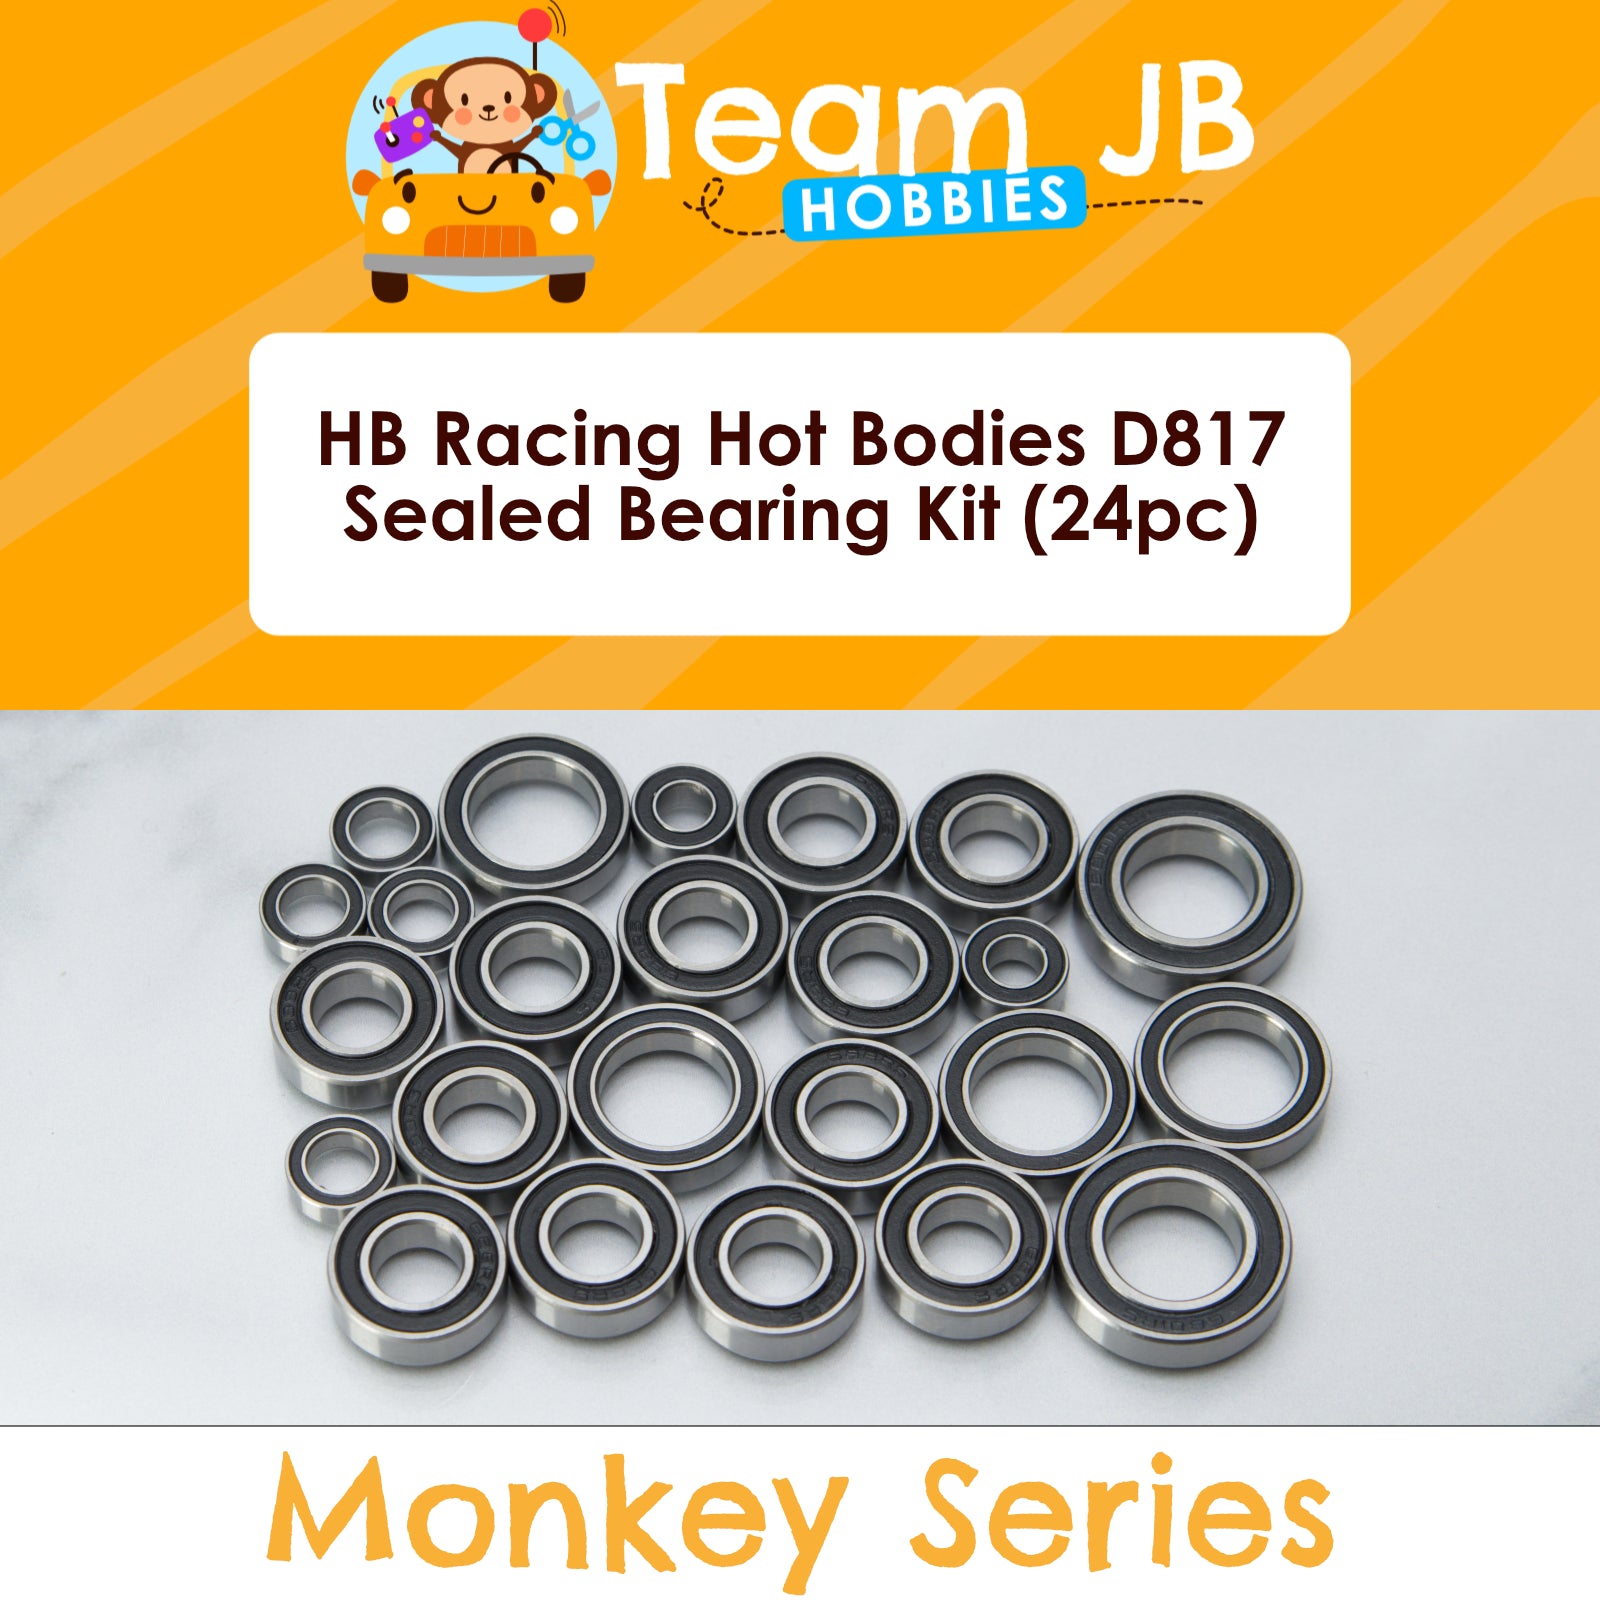 HB Racing Hot Bodies D817 - Sealed Bearing Kit